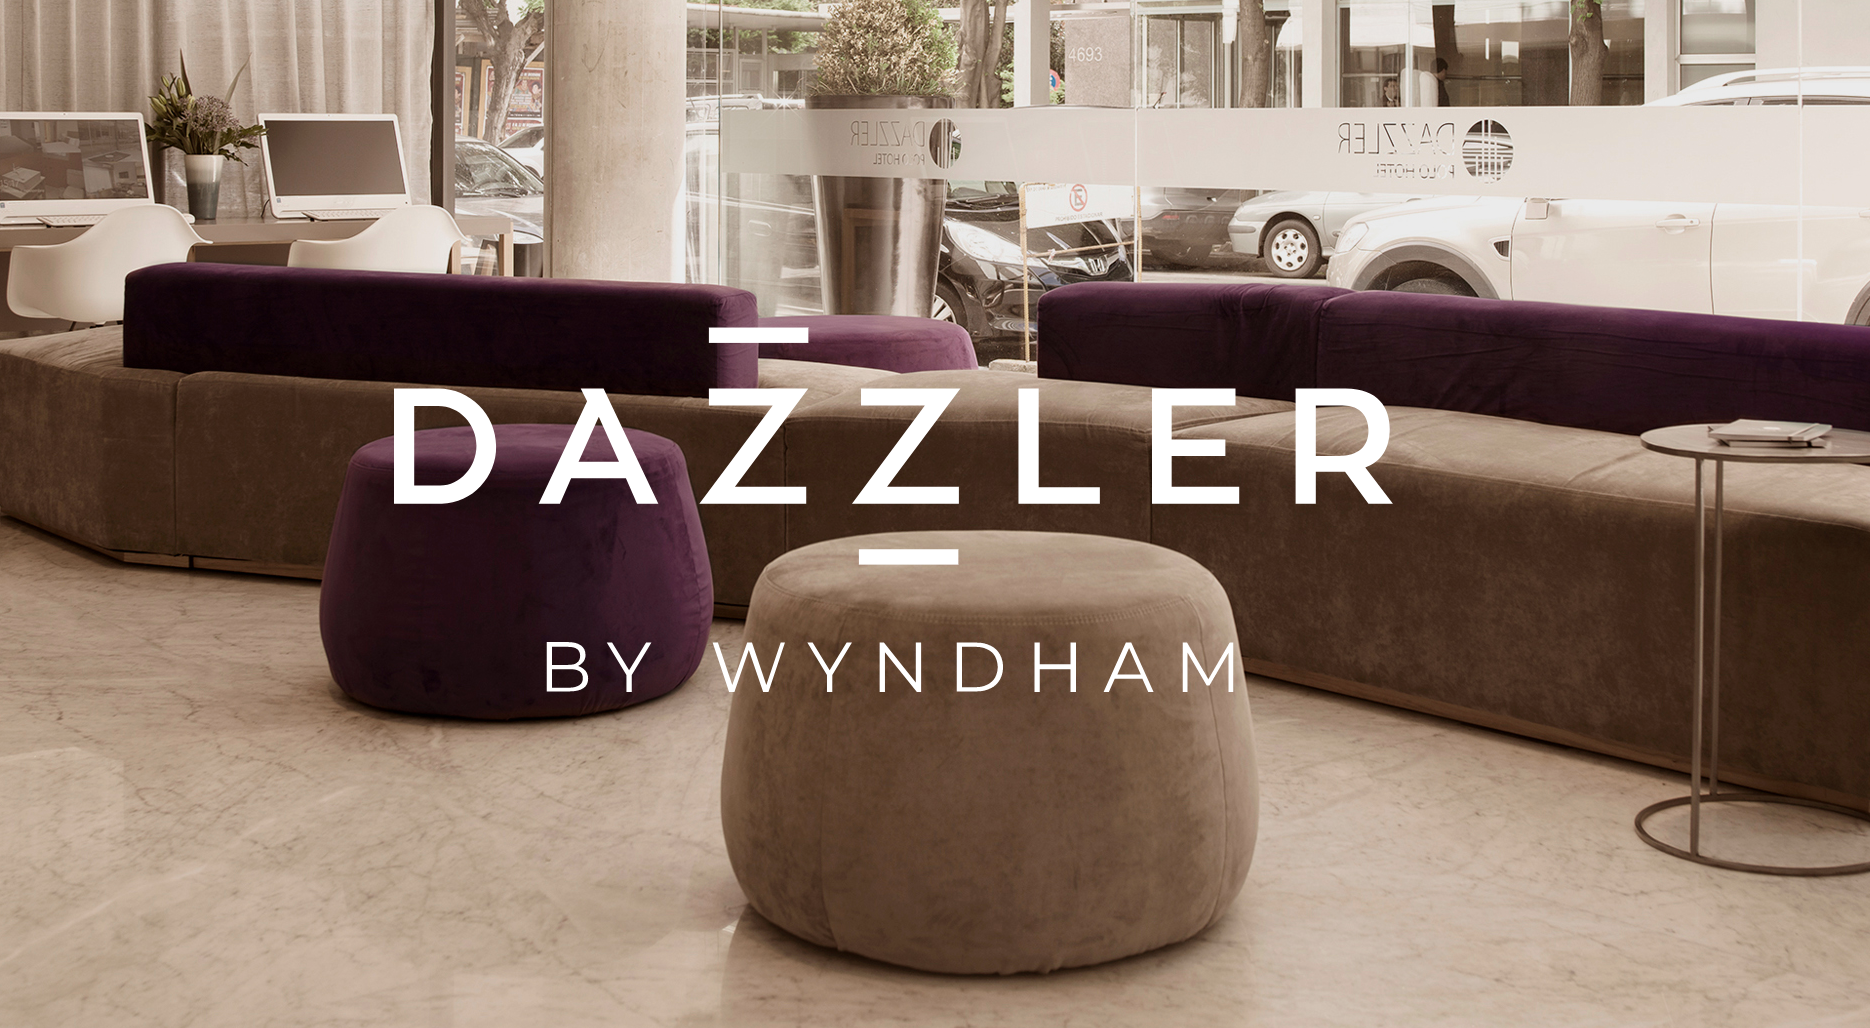 Dazzler by Wyndham